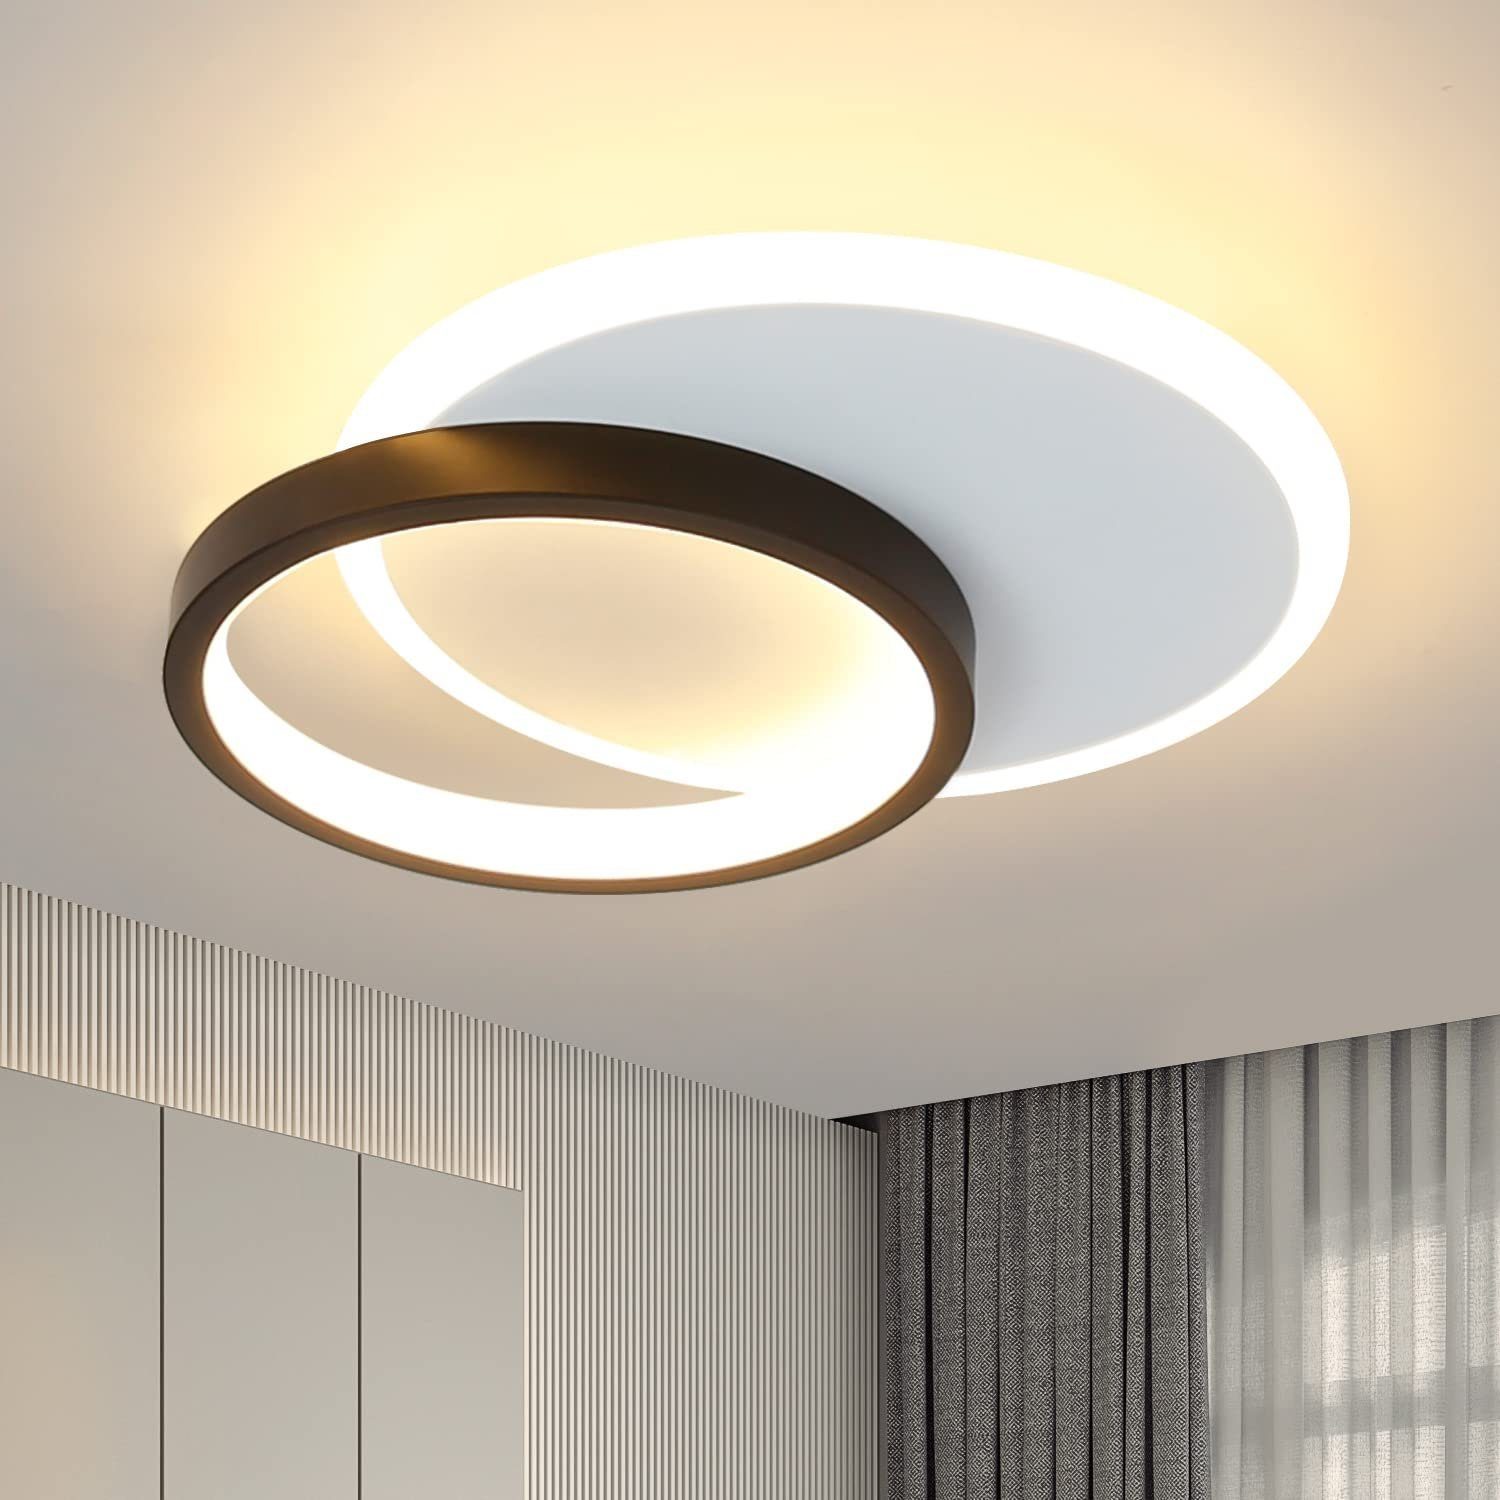 ZMH LED Deckenleuchte Modern Schwarz Weiß Design Acryl Wohnzimmerlampe, LED fest integriert, Warmweiß, 2 Ringe, 12W